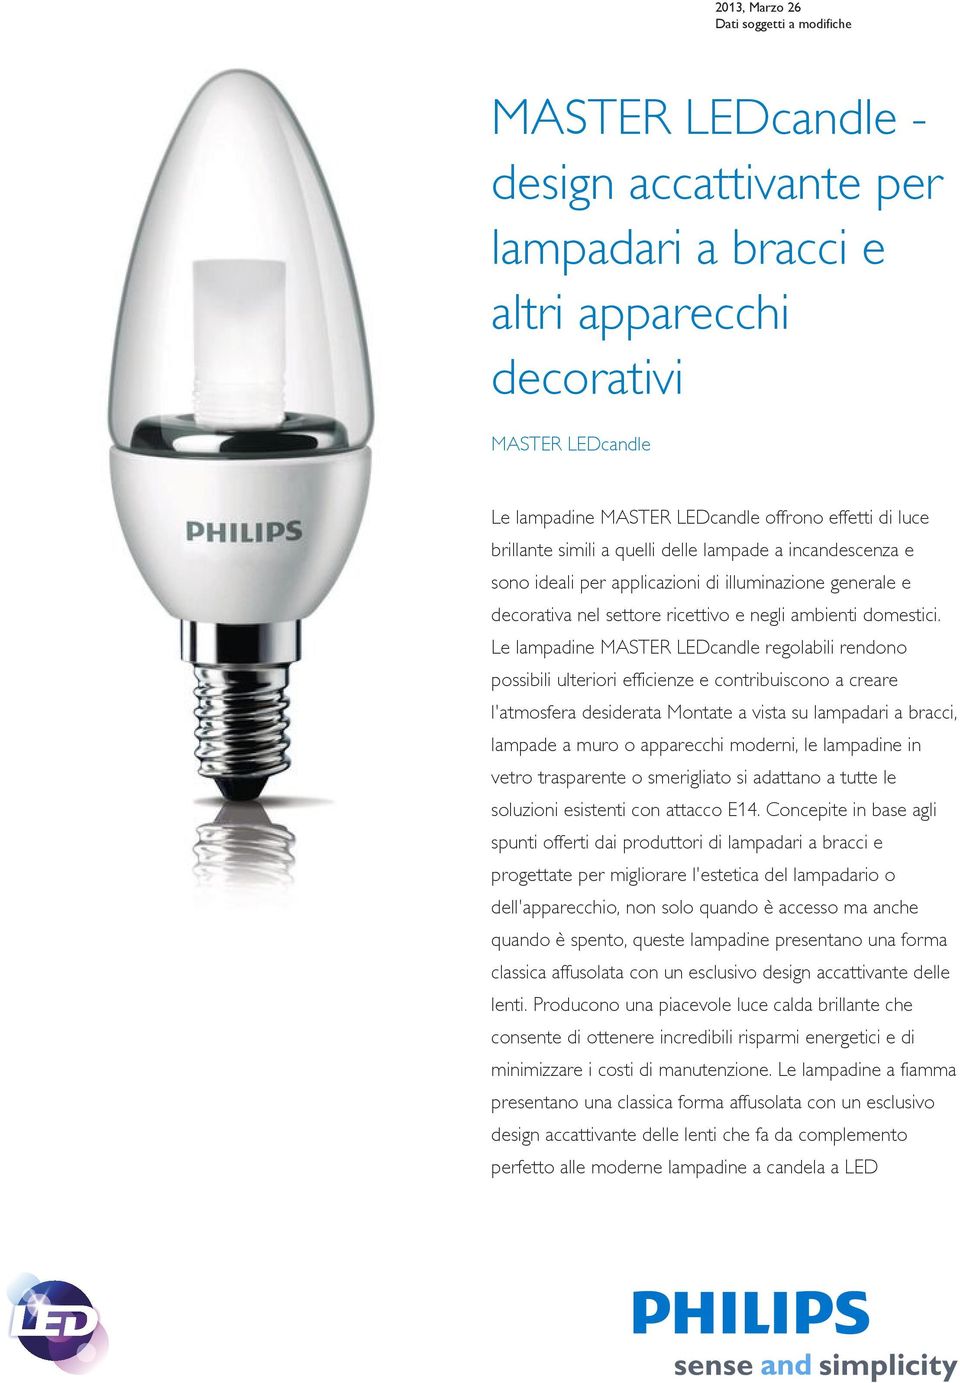 Le lampadine MASTER LEDcandle regolabili rendono possibili ulteriori efficienze e contribuiscono a creare l'atmosfera desiderata Montate a vista su lampadari a bracci, lampade a muro o apparecchi